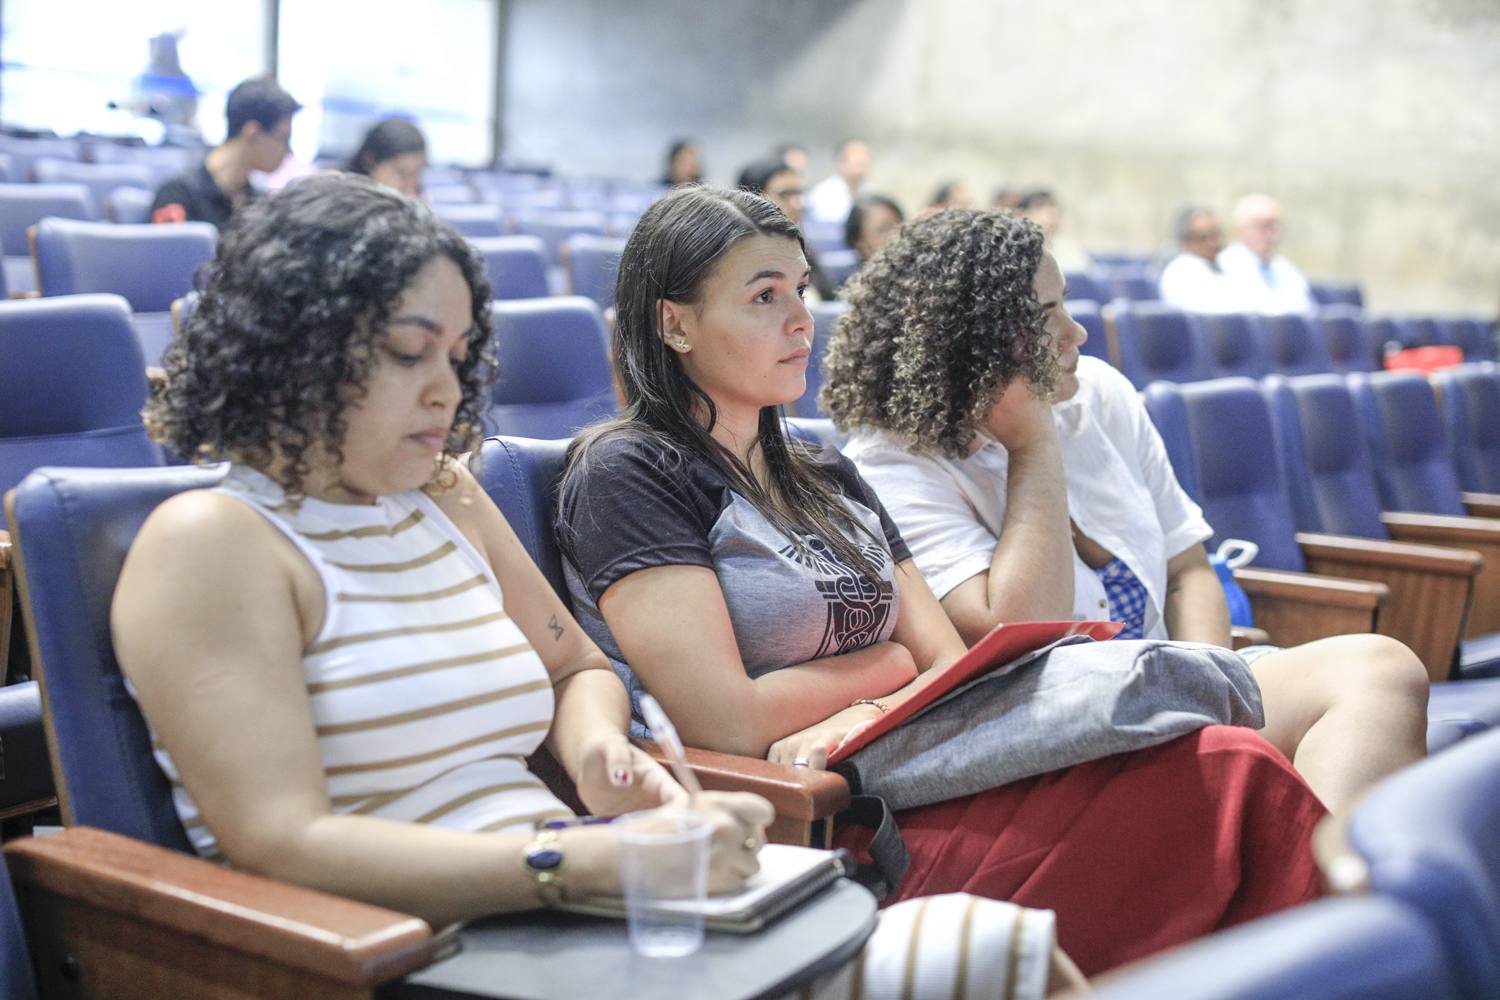 Evento com a apresentação de especialistas atraiu alunos de diversos cursos de graduação e pós-graduação (Foto: Adilson Andrade/AscomUFS)